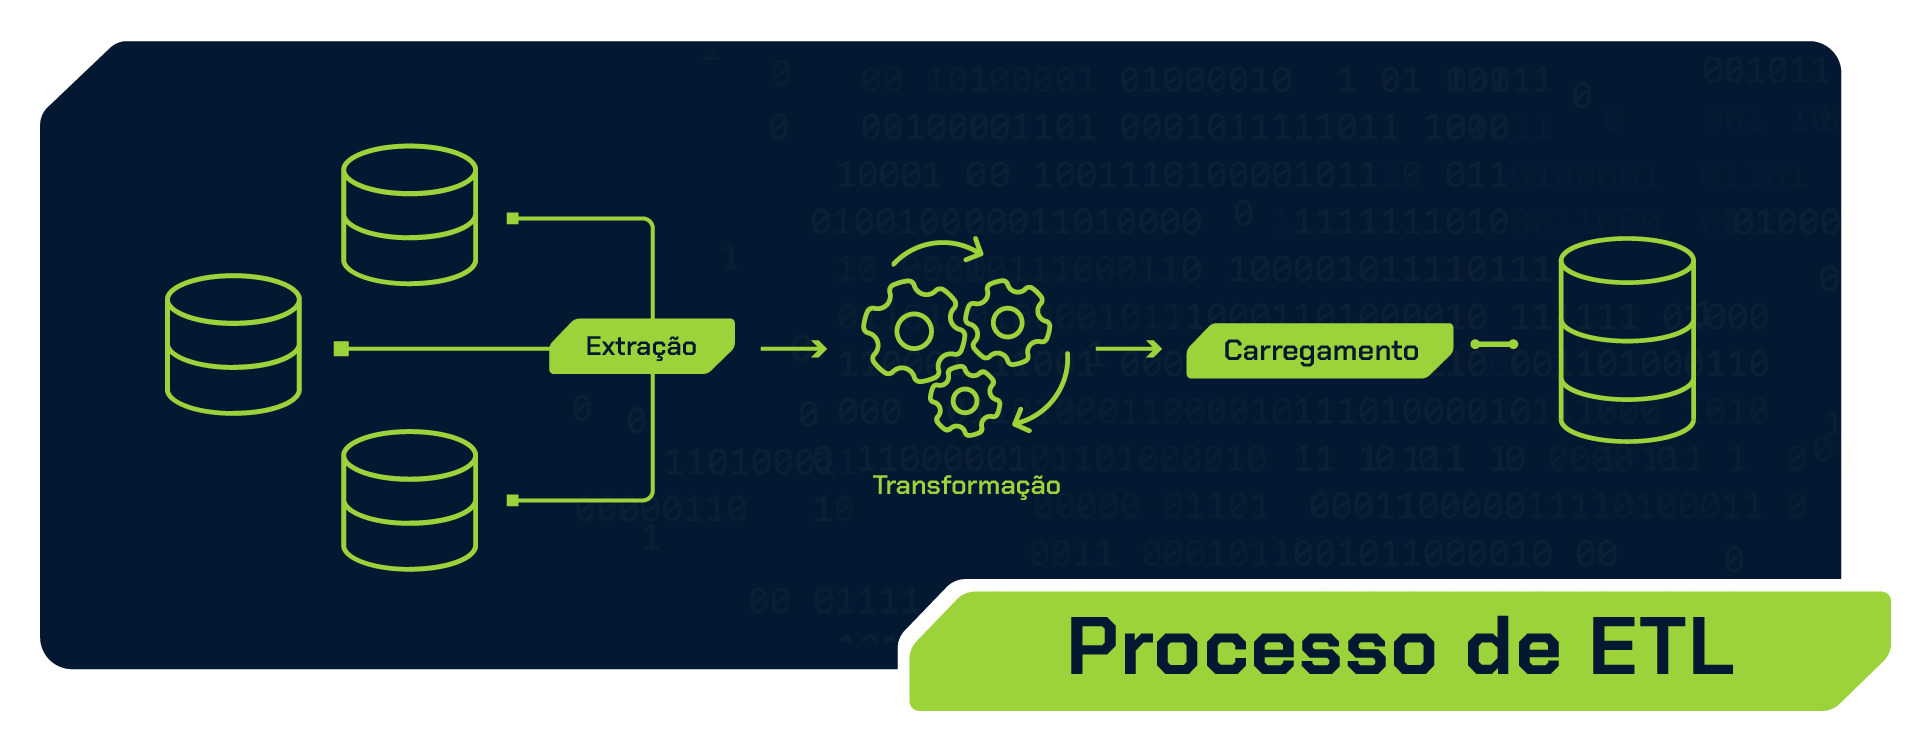 Imagem colorida representado o processo ETL. Na imagem, temos três elementos, da esquerda para a direita, simbolizando respectivamente a extração, transformação e carregamento.